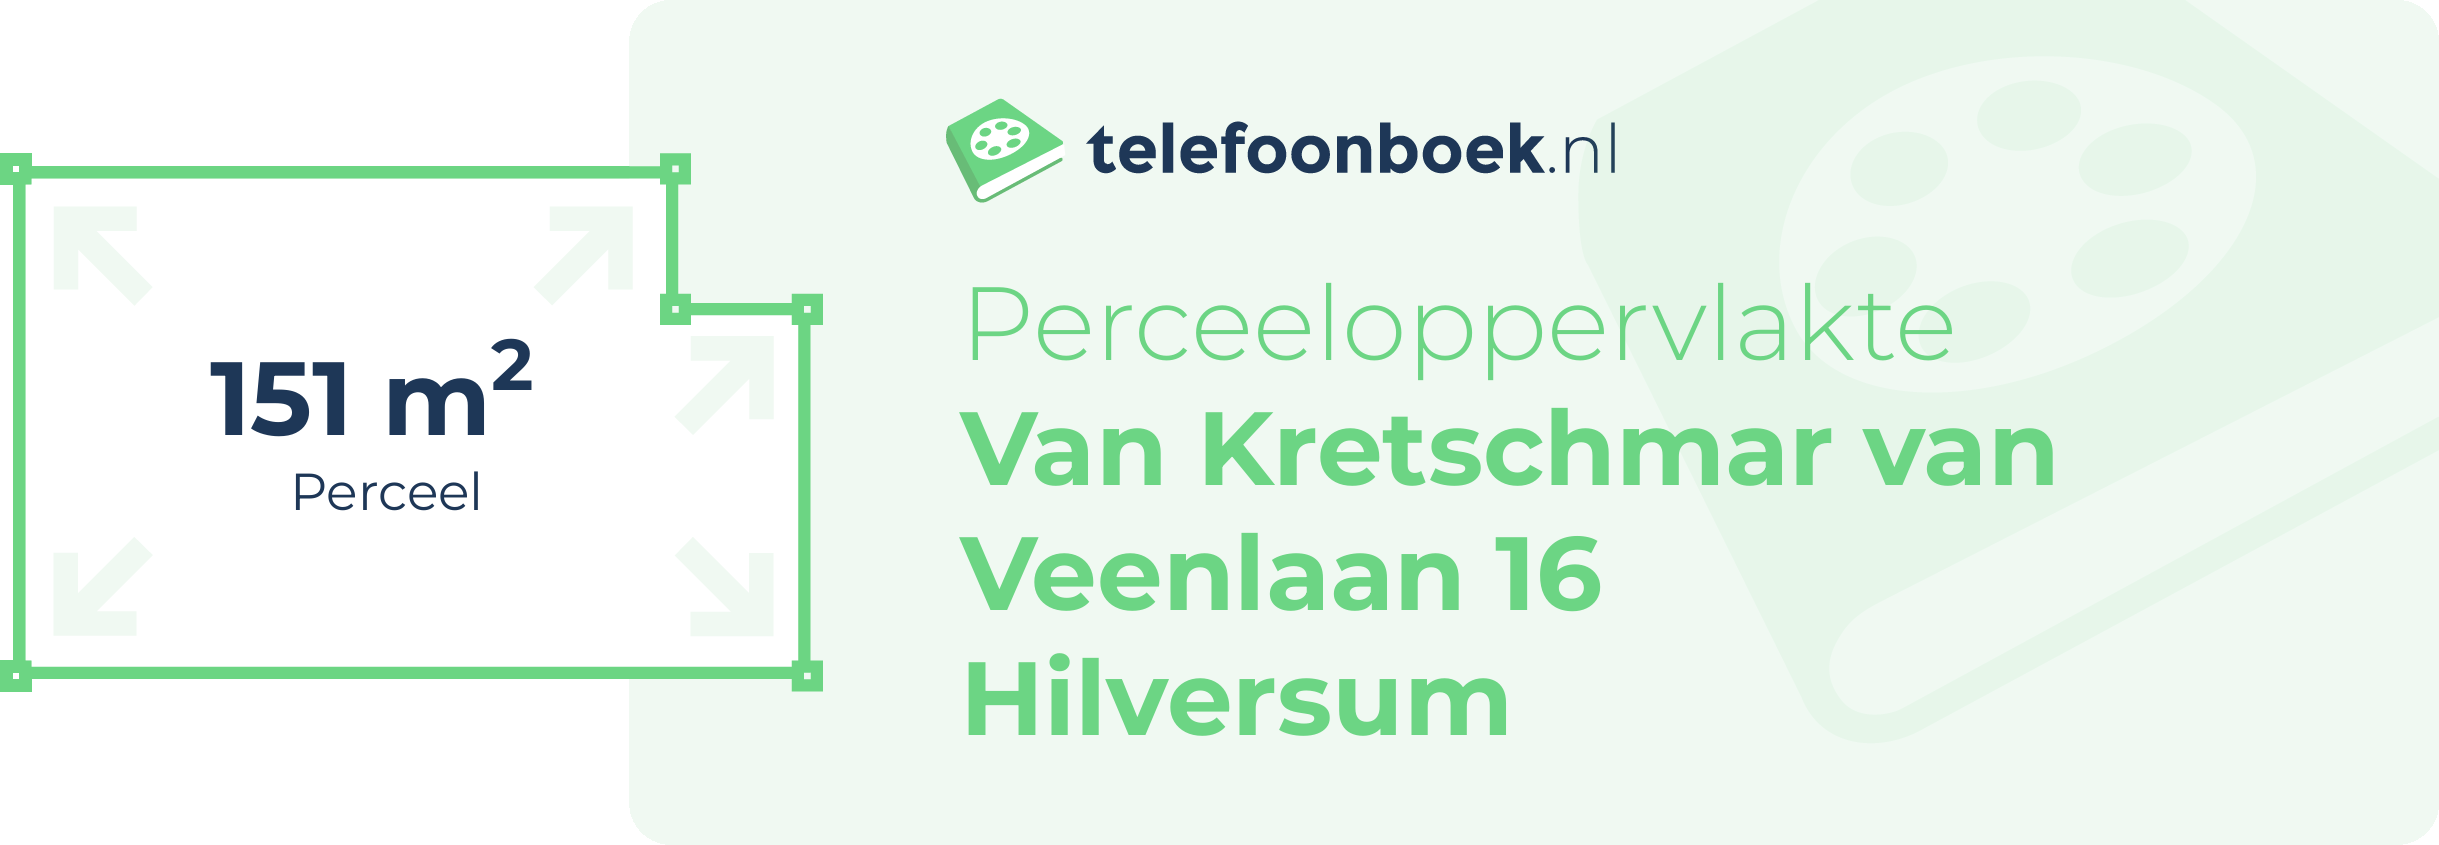 Perceeloppervlakte Van Kretschmar Van Veenlaan 16 Hilversum